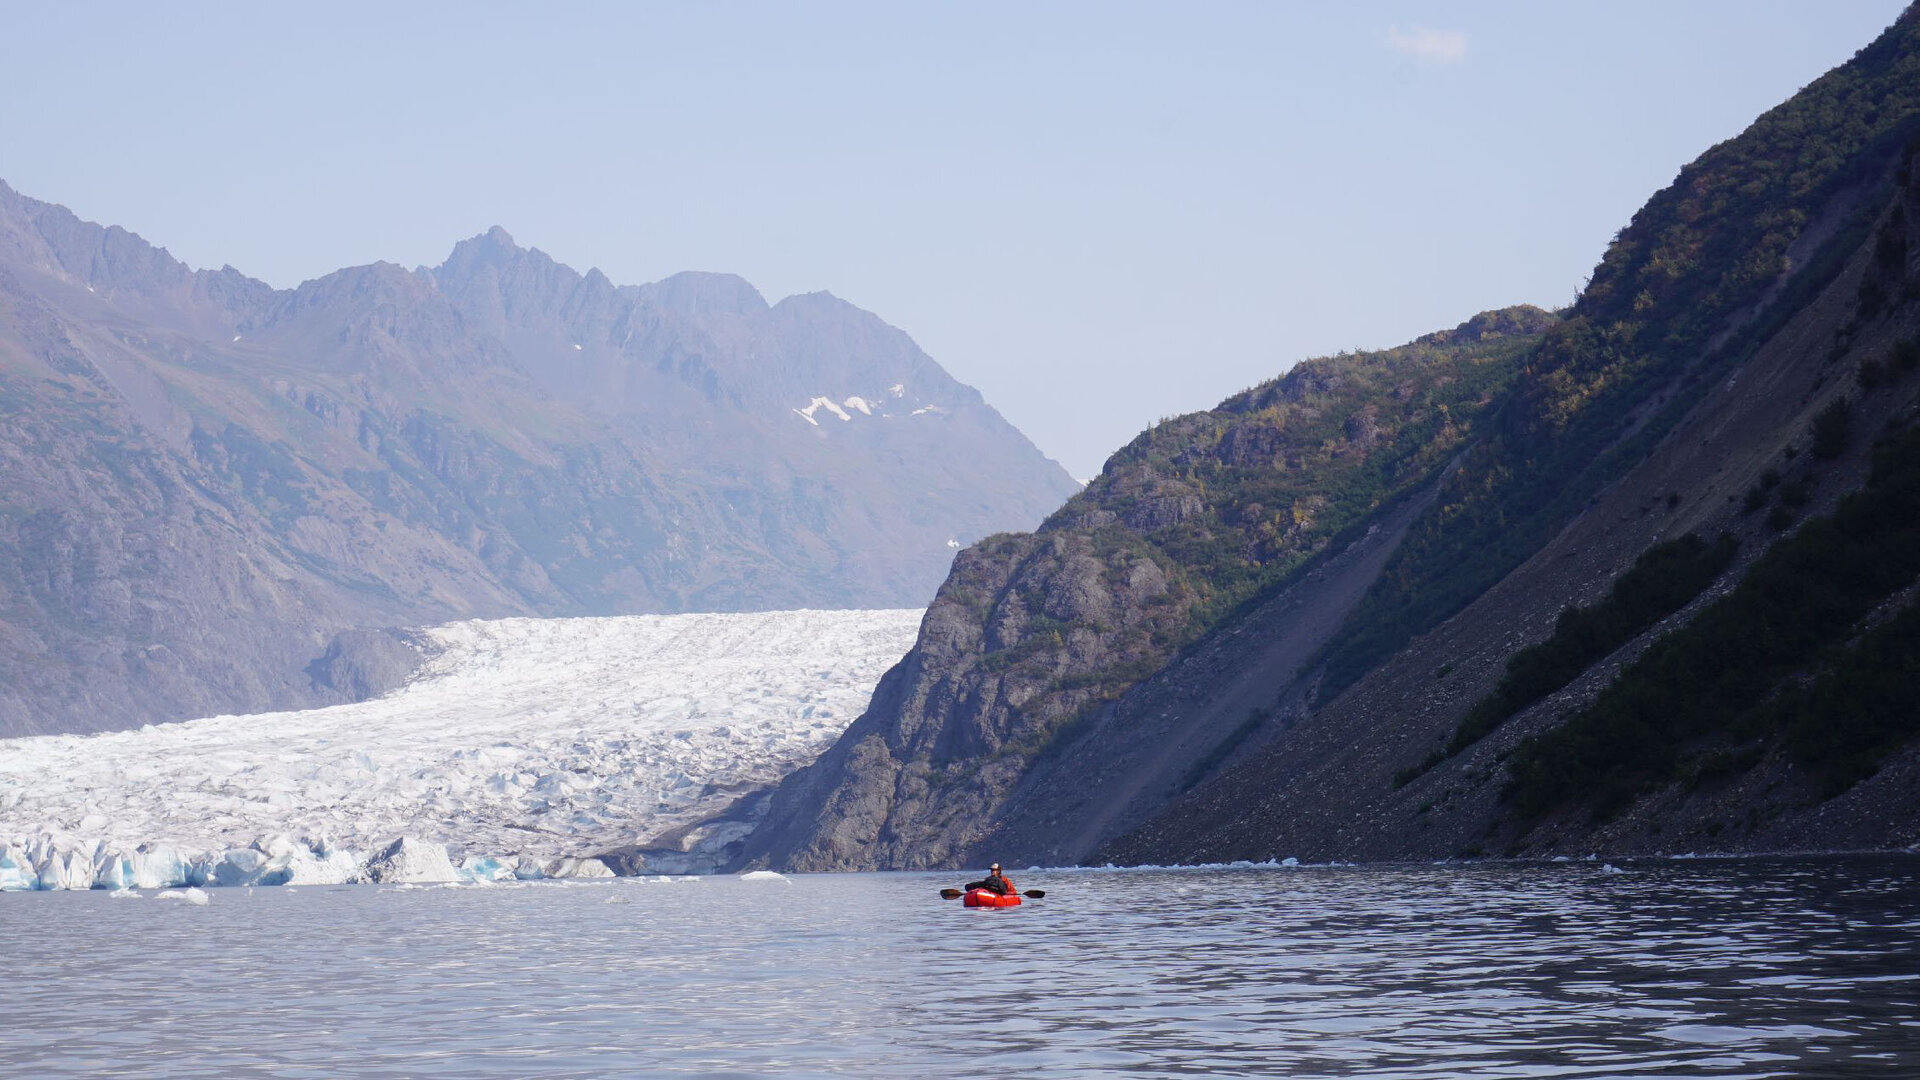 Im Rahmen der Vorerkundung besichtigten die Forscher aus Aachen und Alaska die steilen Felshänge,
Quellen und Spalten entlang des Grewingk Sees mittels Packrafts